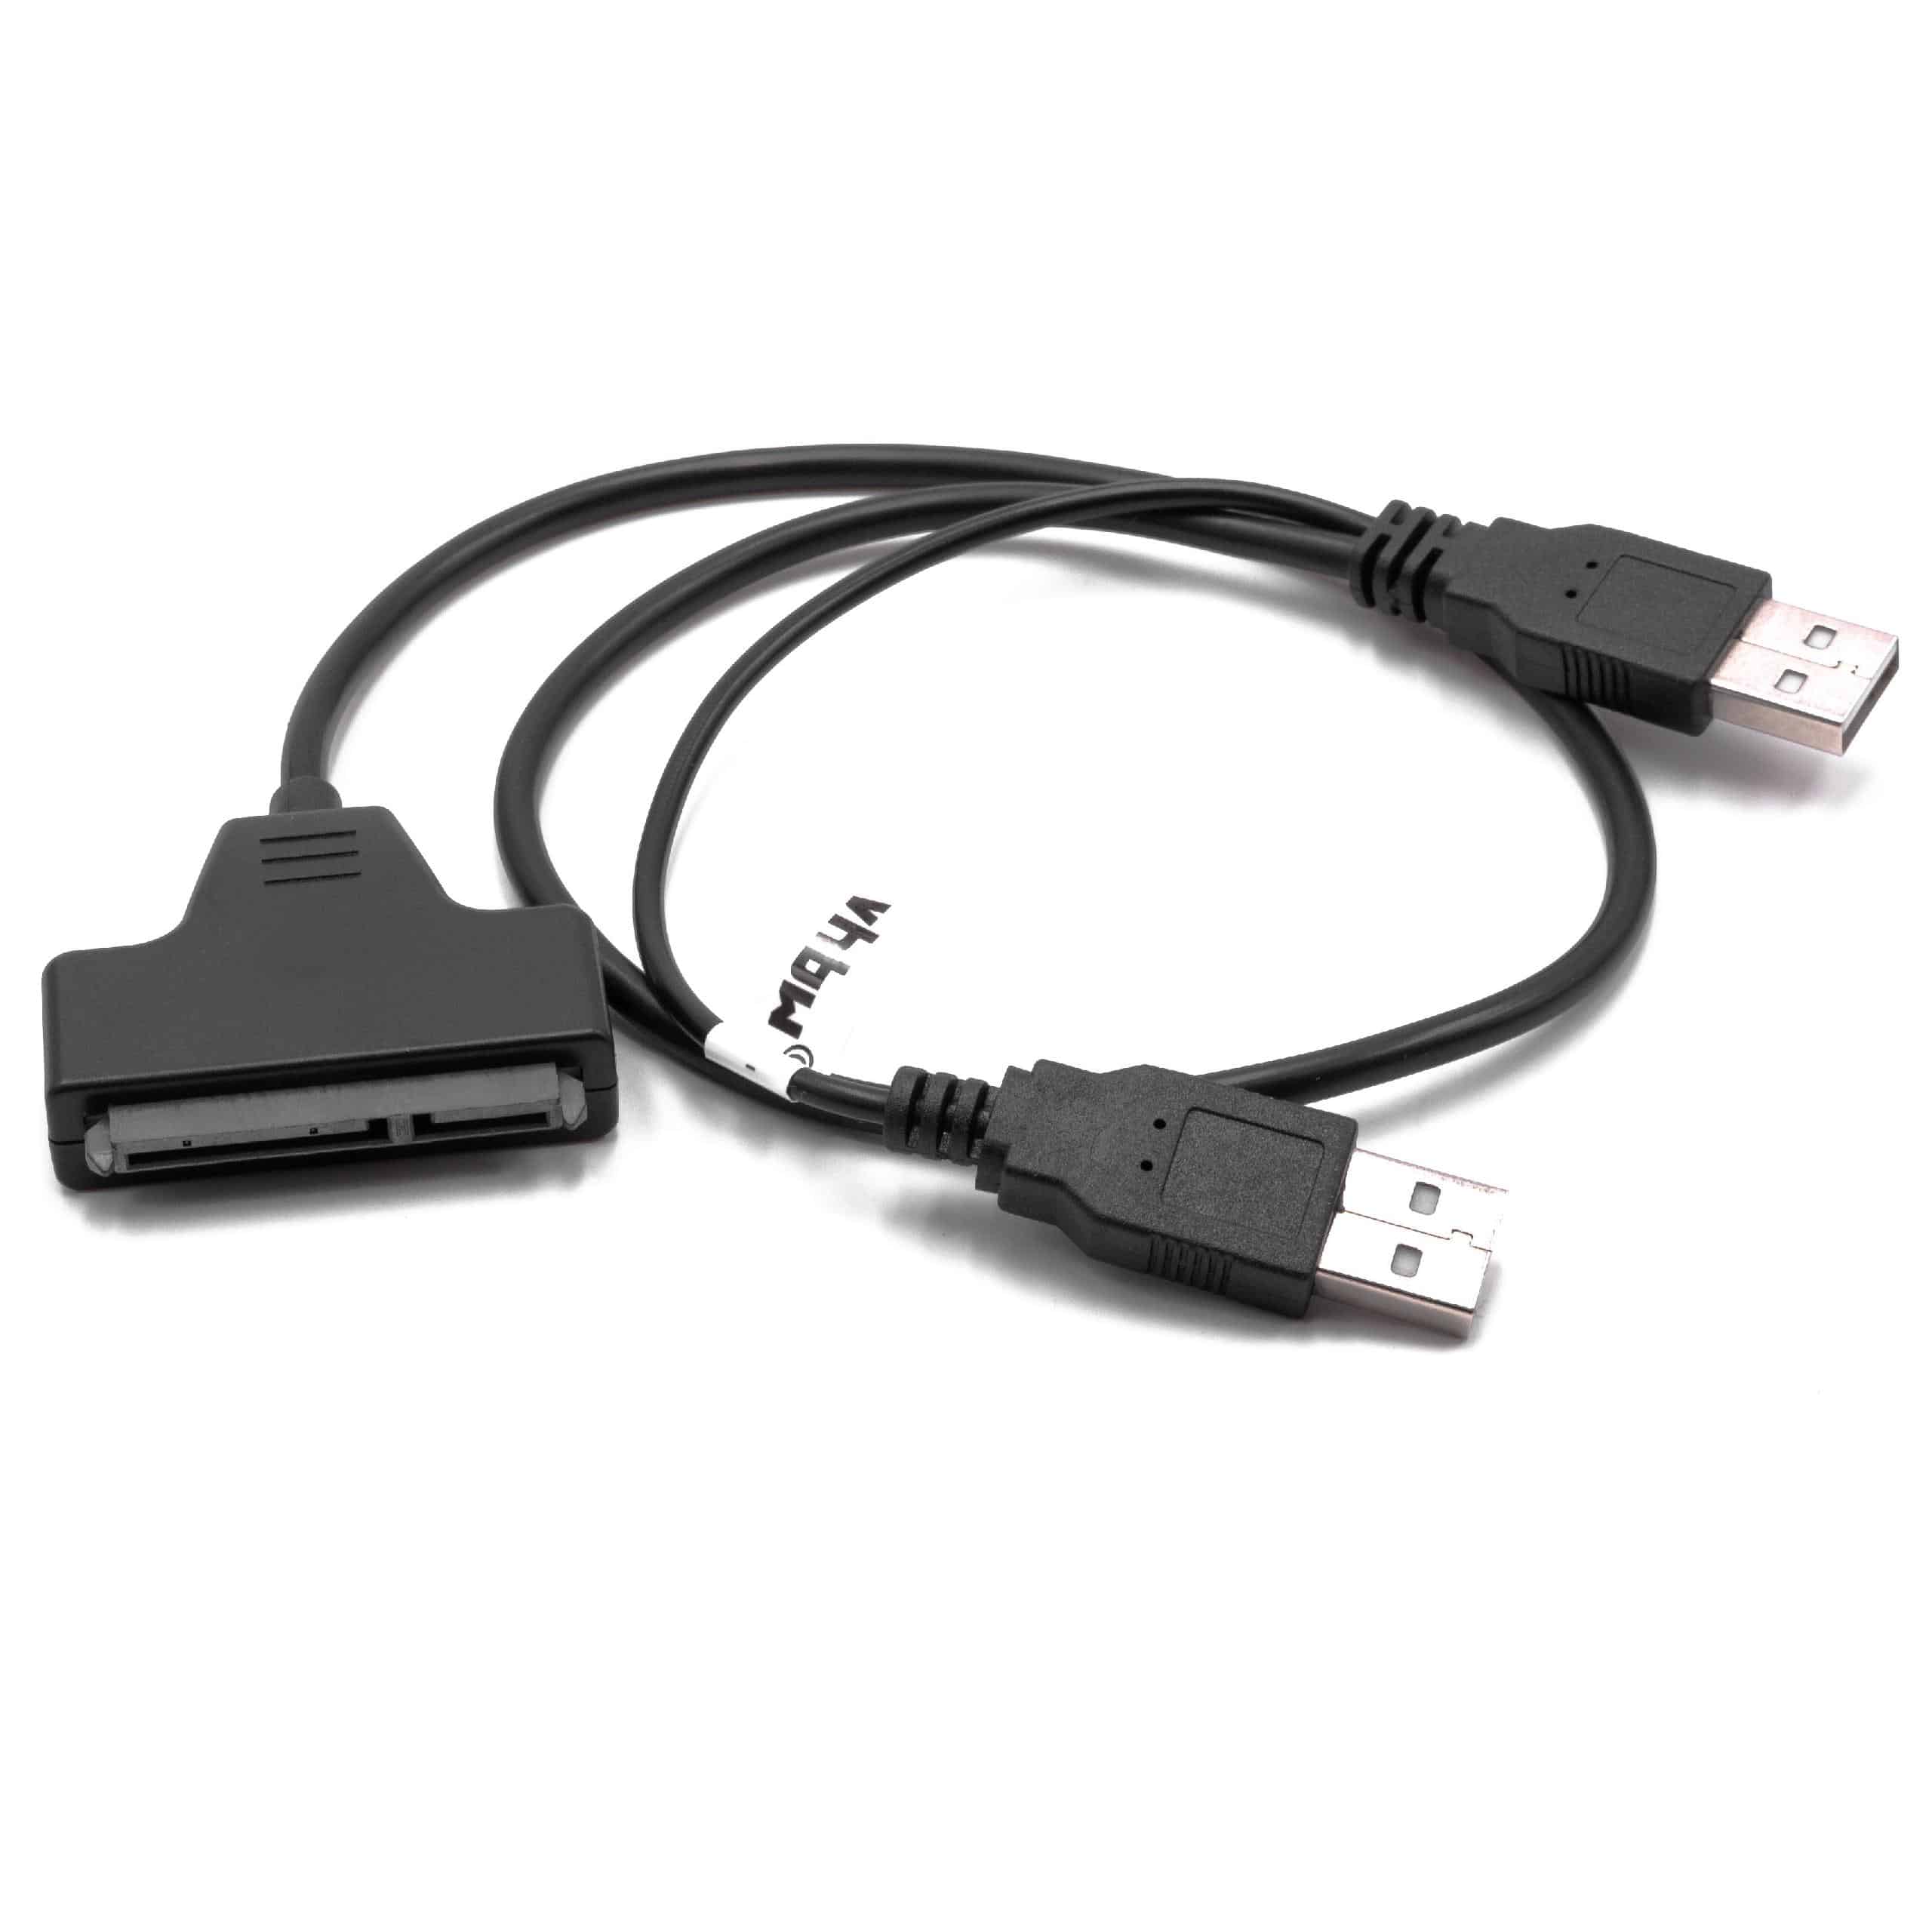 SATA a USB Cable adaptador de disco duro, cable de conexión para HDDdiscos duros, con capacidad Plug & Play